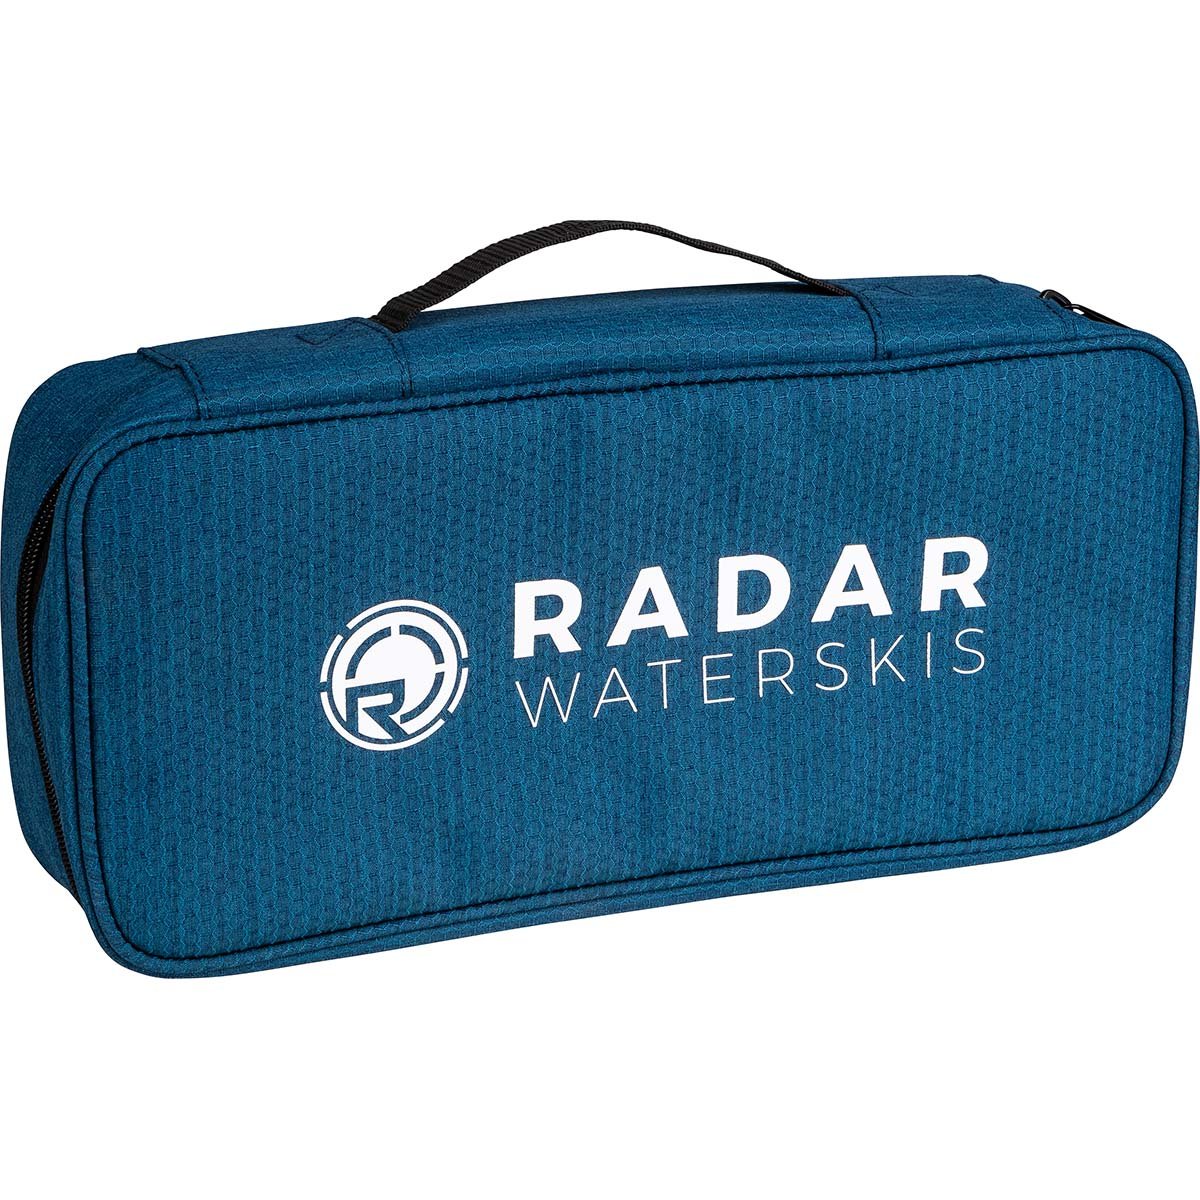 Radar Loaded Water Ski Tool Kit - BoardCo